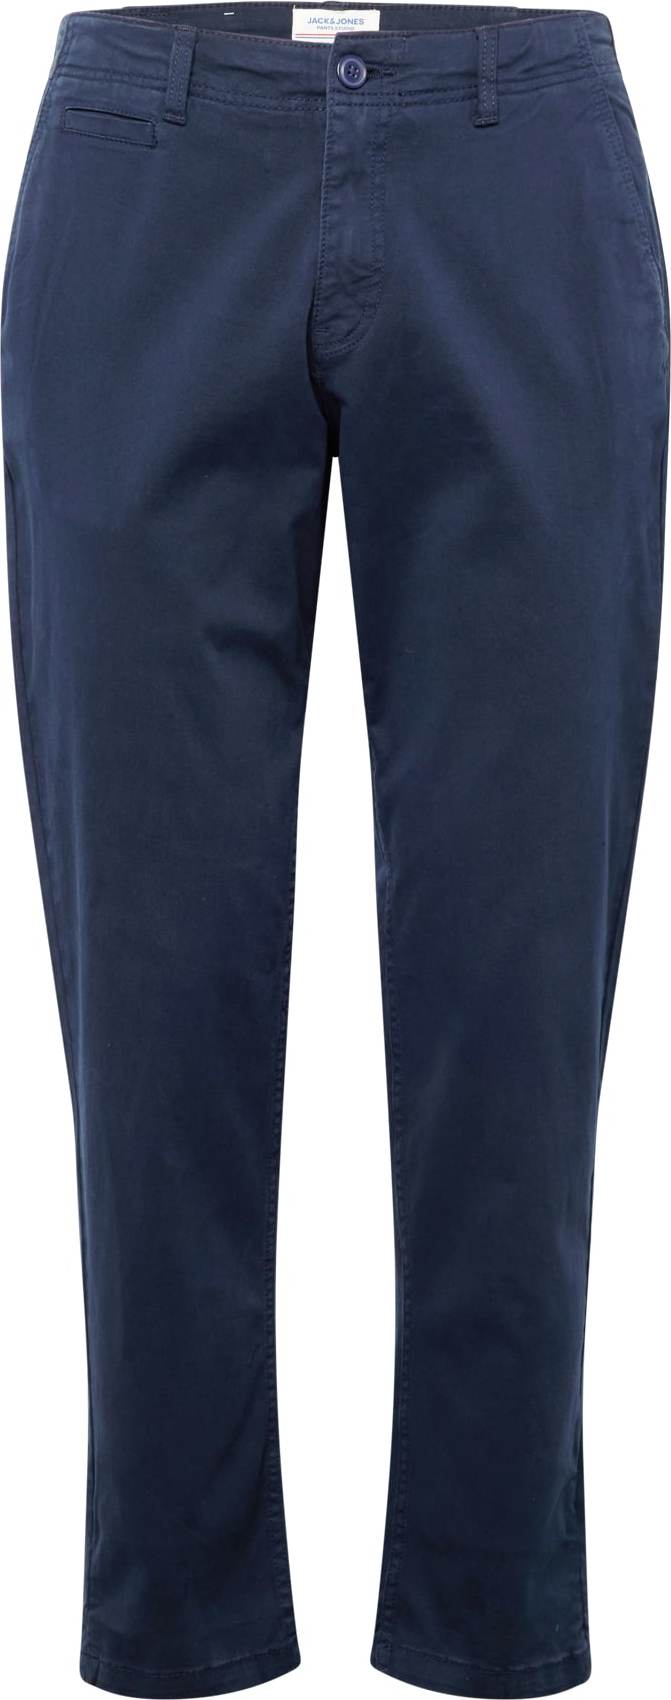 Chino kalhoty 'Stace Harlow' jack & jones námořnická modř